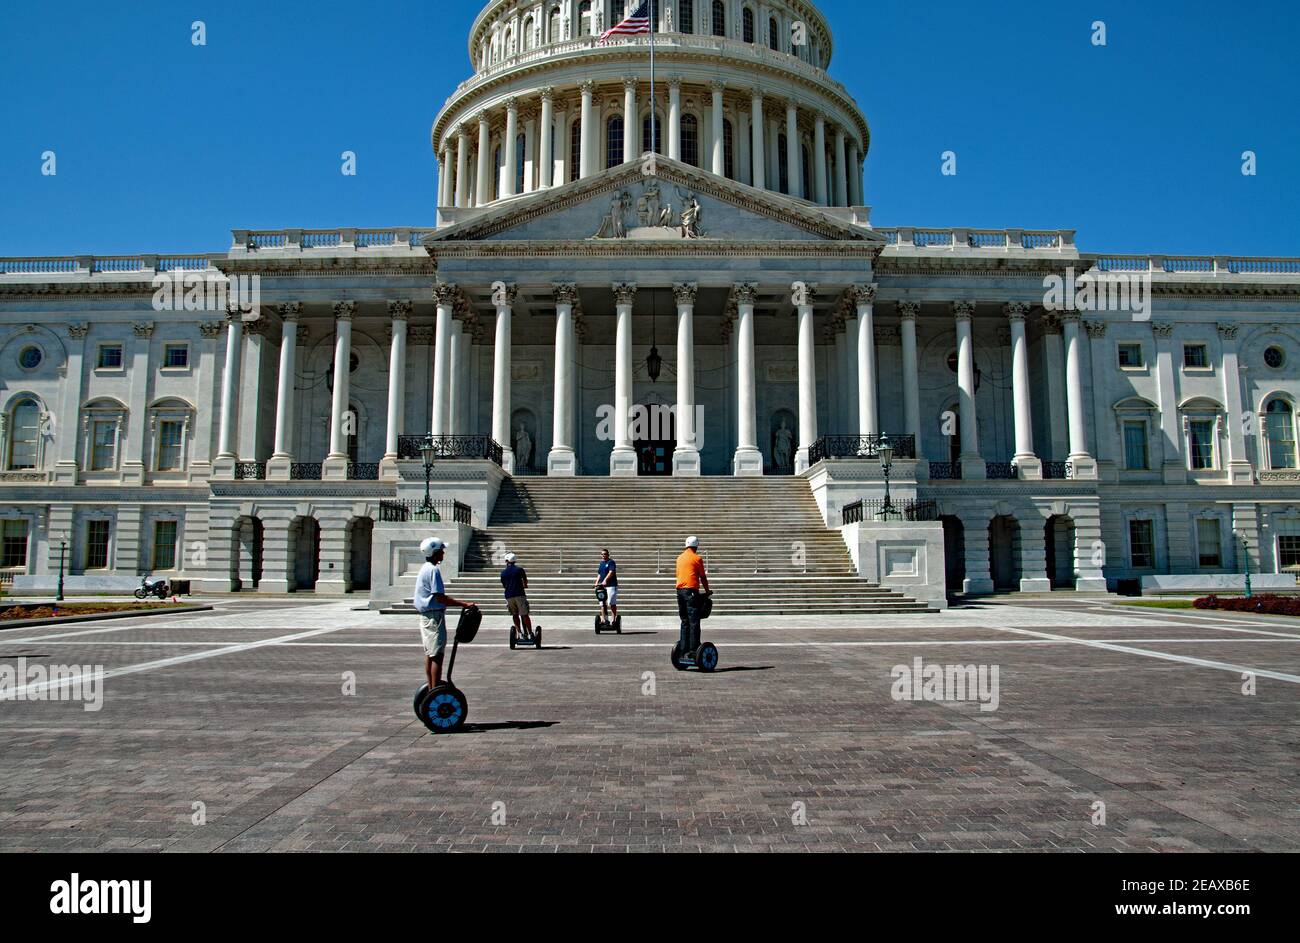 Le groupe à cheval Segway visite le bâtiment du Capitole des États-Unis à Washington DC Banque D'Images